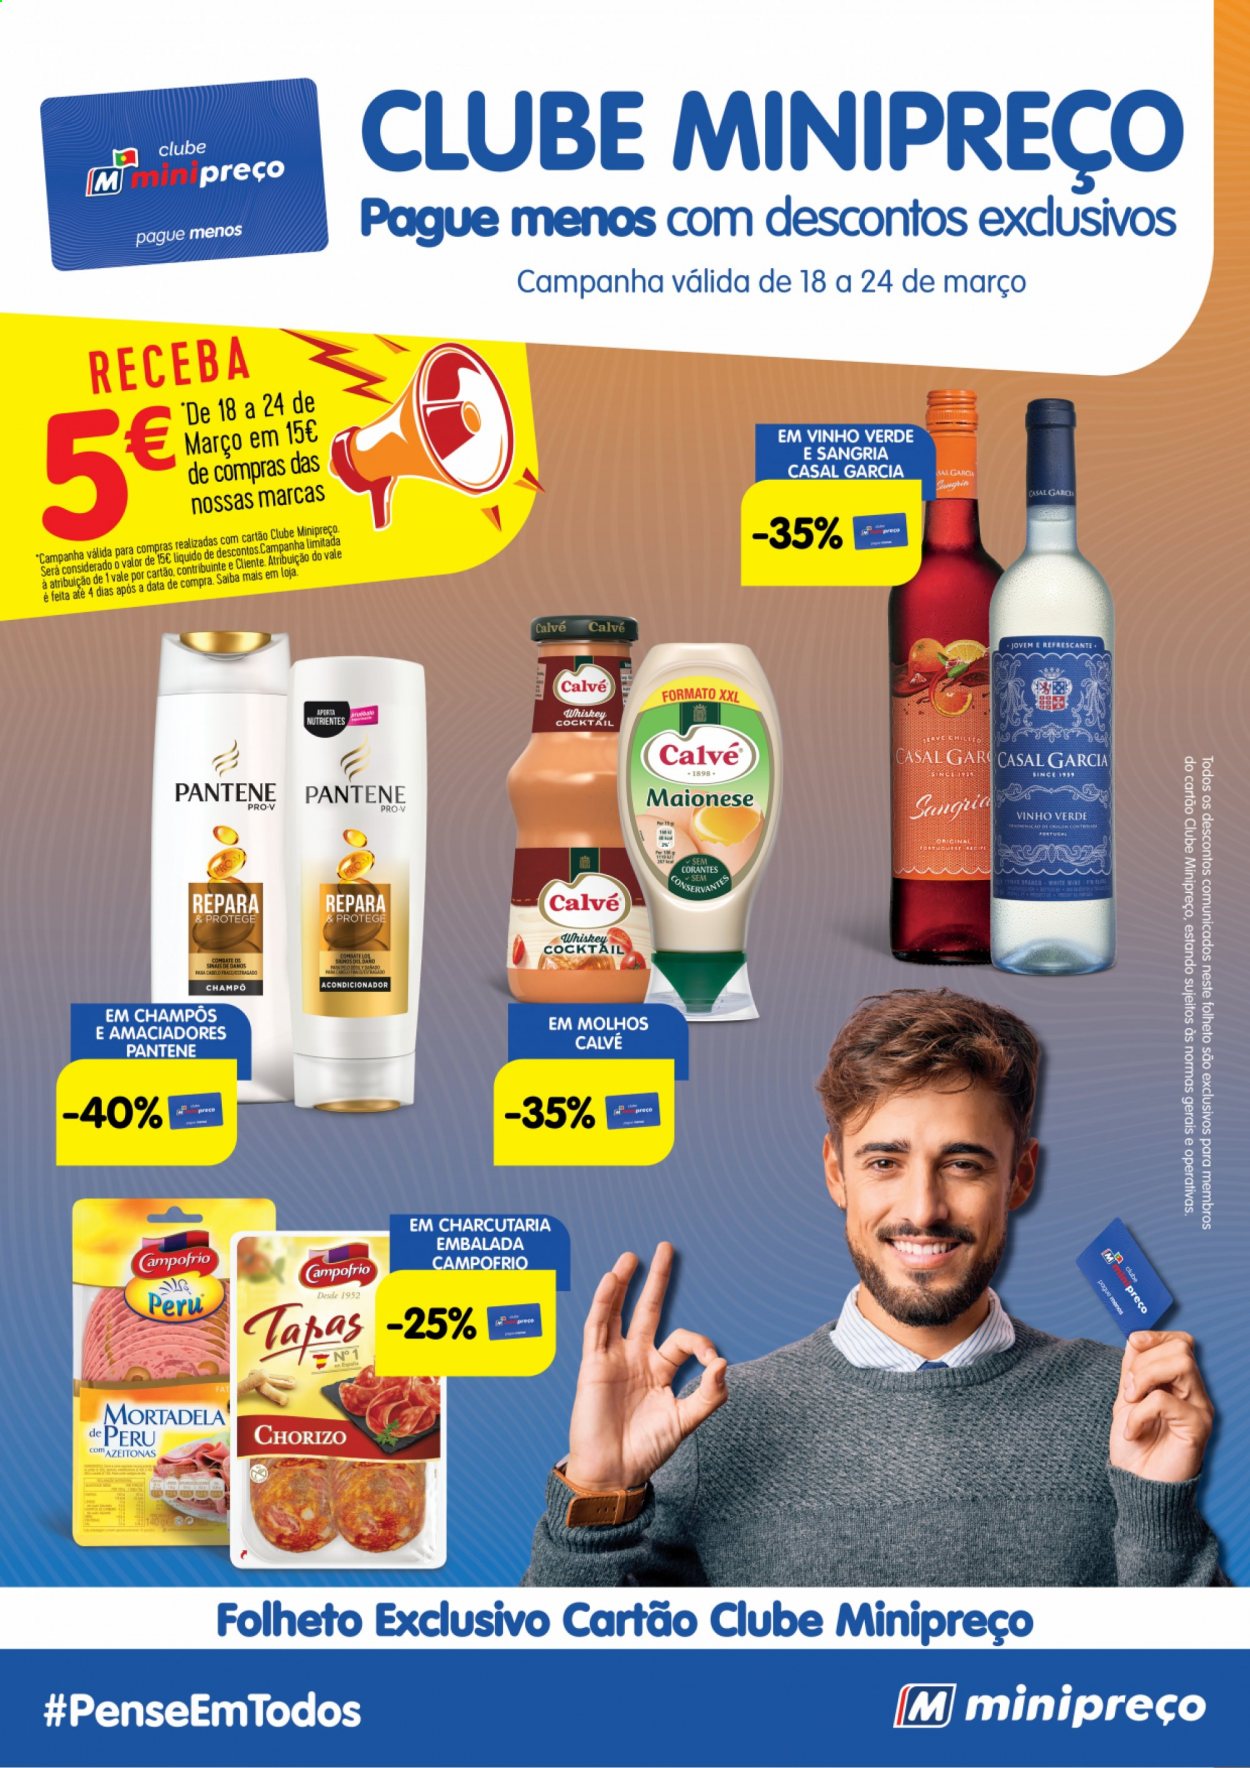 thumbnail - Folheto Minipreço - 18.3.2021 - 24.3.2021 - Produtos em promoção - perú, mortadela, maionese, sal, whiskey, shampoo, Pantene. Página 1.